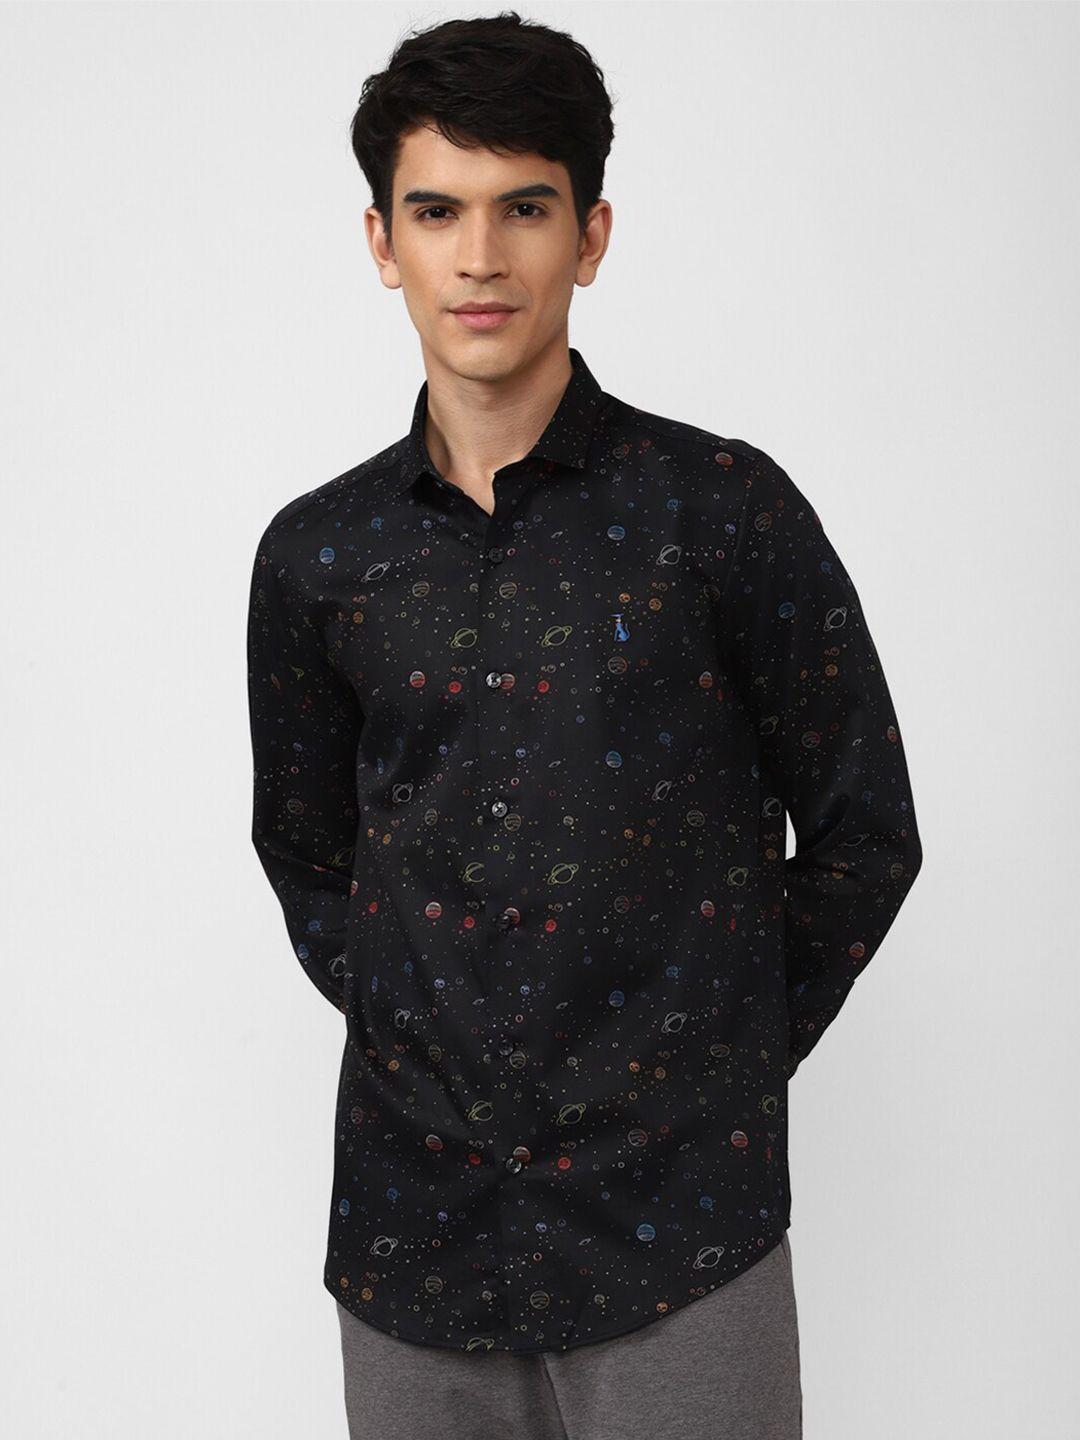 simon-carter-london-men-black-slim-fit-printed-casual-shirt